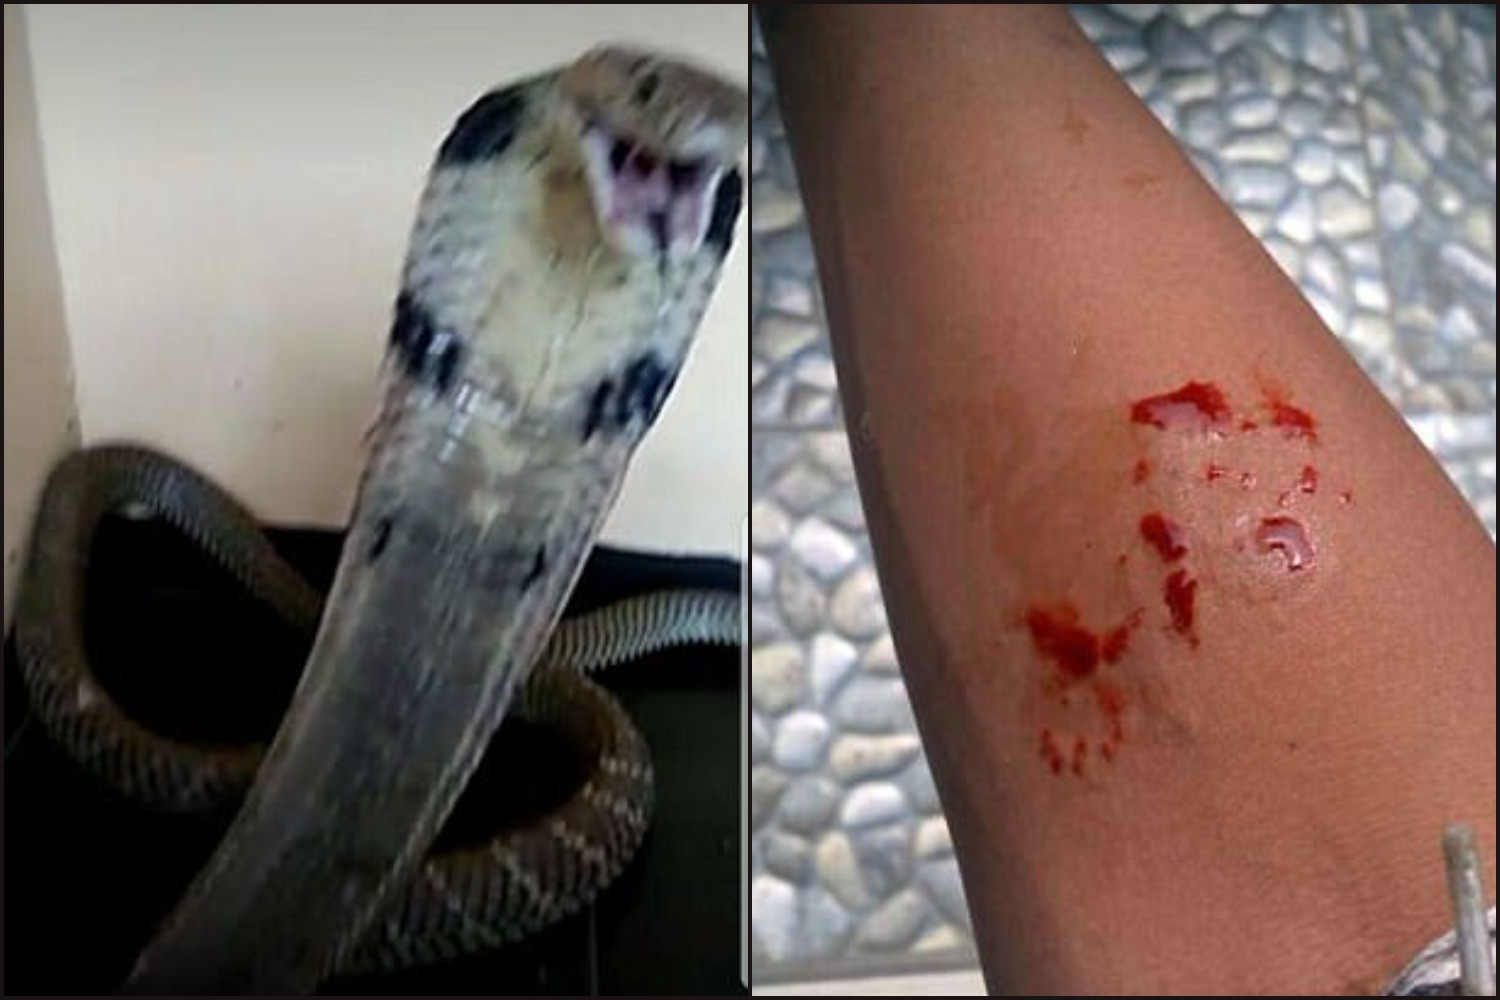 Kiposztolta a WhatsAppra, hogy megmarta a saját kobrája, fél nappal később belehalt